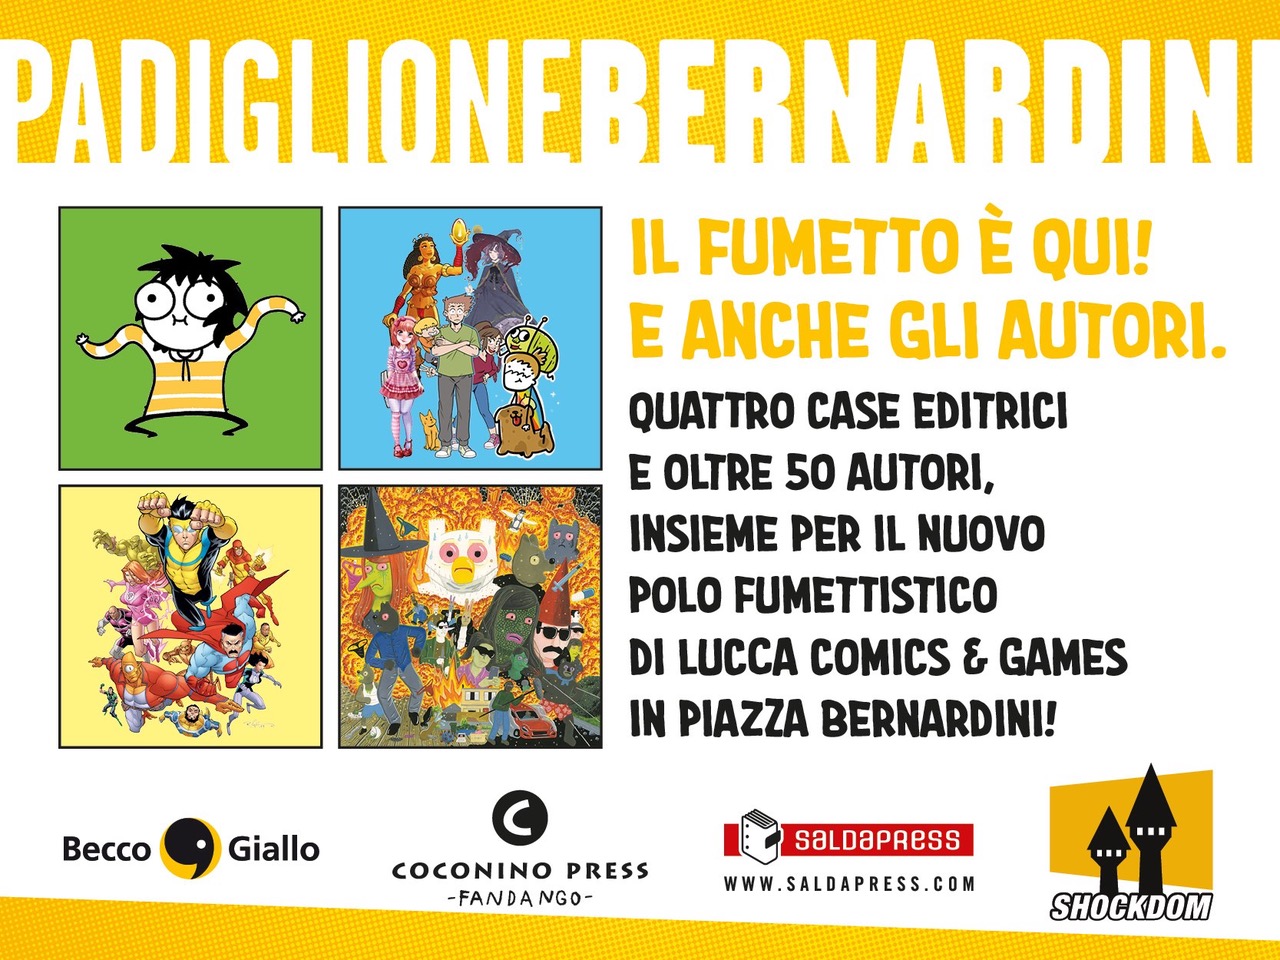 Lucca Comics & Games 2021, il padiglione Bernardini, nel cuore di Lucca, sarà la casa di BeccoGiallo, Coconino Press, SaldaPress e Shockdom.